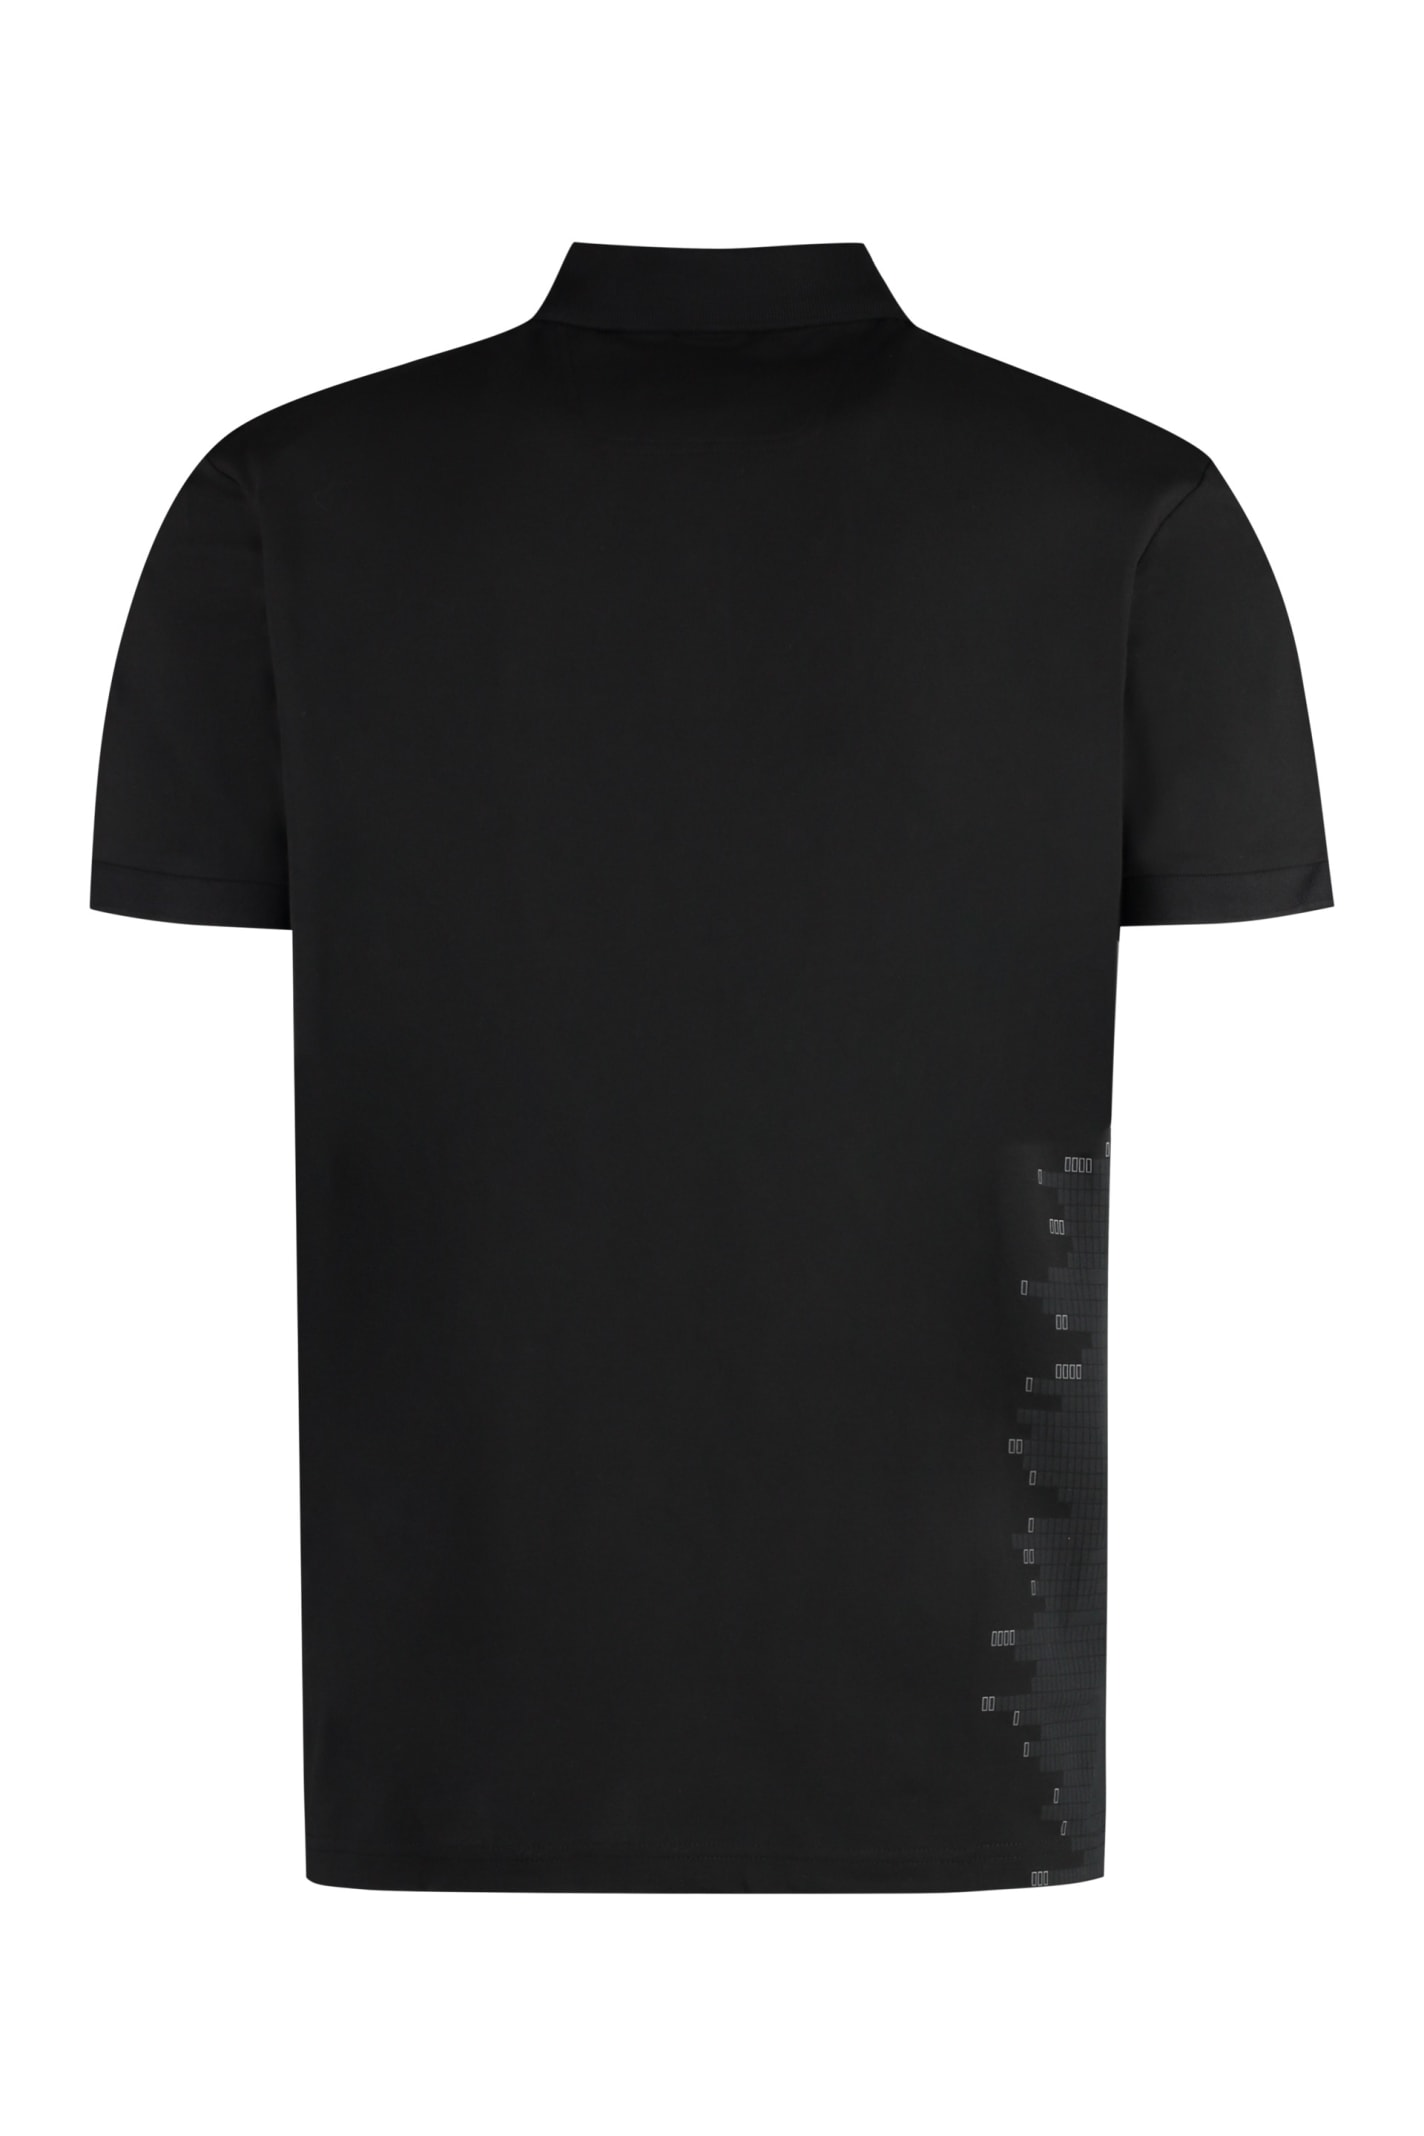 Shop Hugo Boss Short Sleeve Cotton Pique Polo Shirt In Black